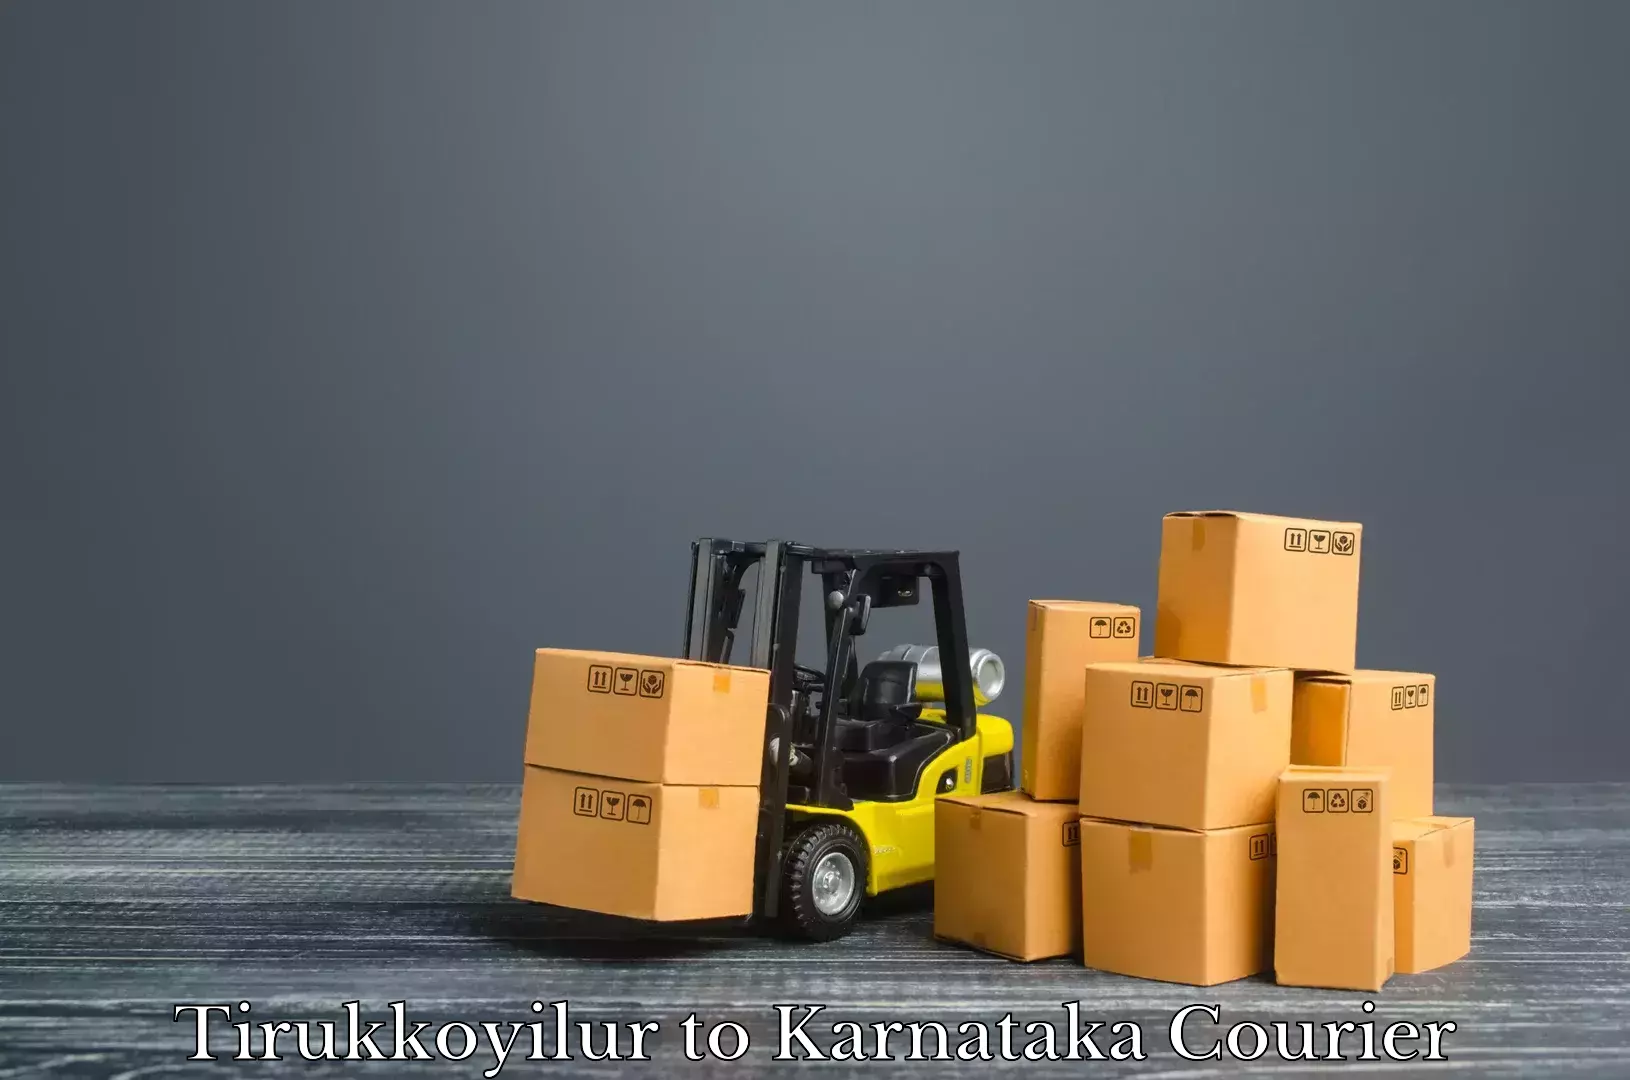 Baggage shipping experts Tirukkoyilur to Ullal